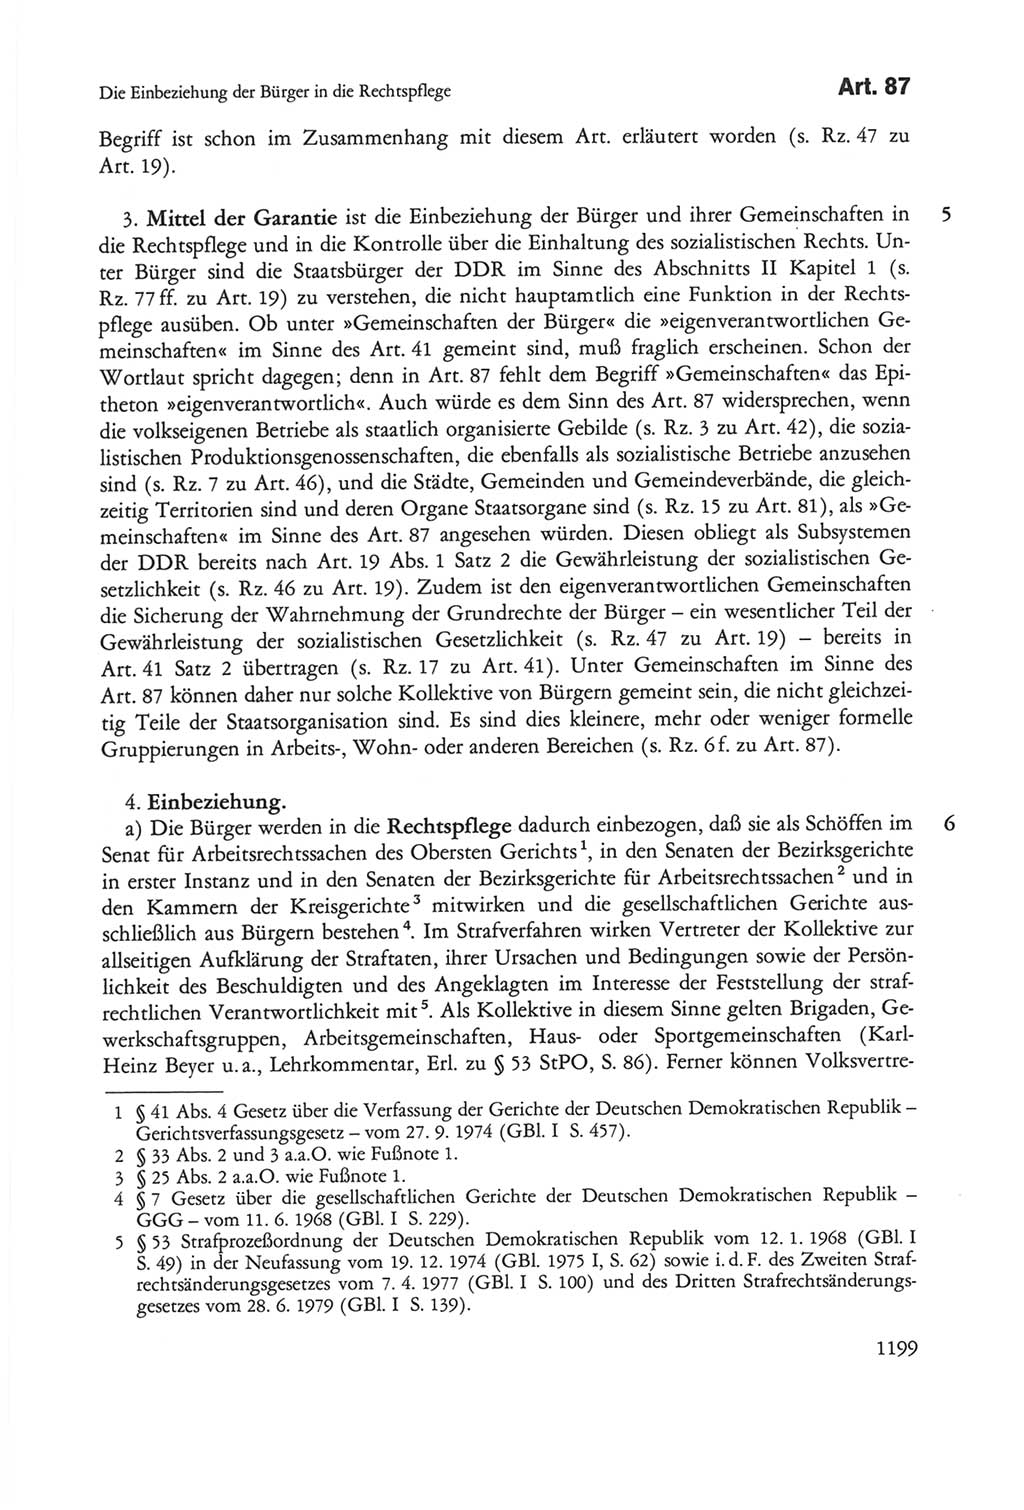 Die sozialistische Verfassung der Deutschen Demokratischen Republik (DDR), Kommentar mit einem Nachtrag 1997, Seite 1199 (Soz. Verf. DDR Komm. Nachtr. 1997, S. 1199)